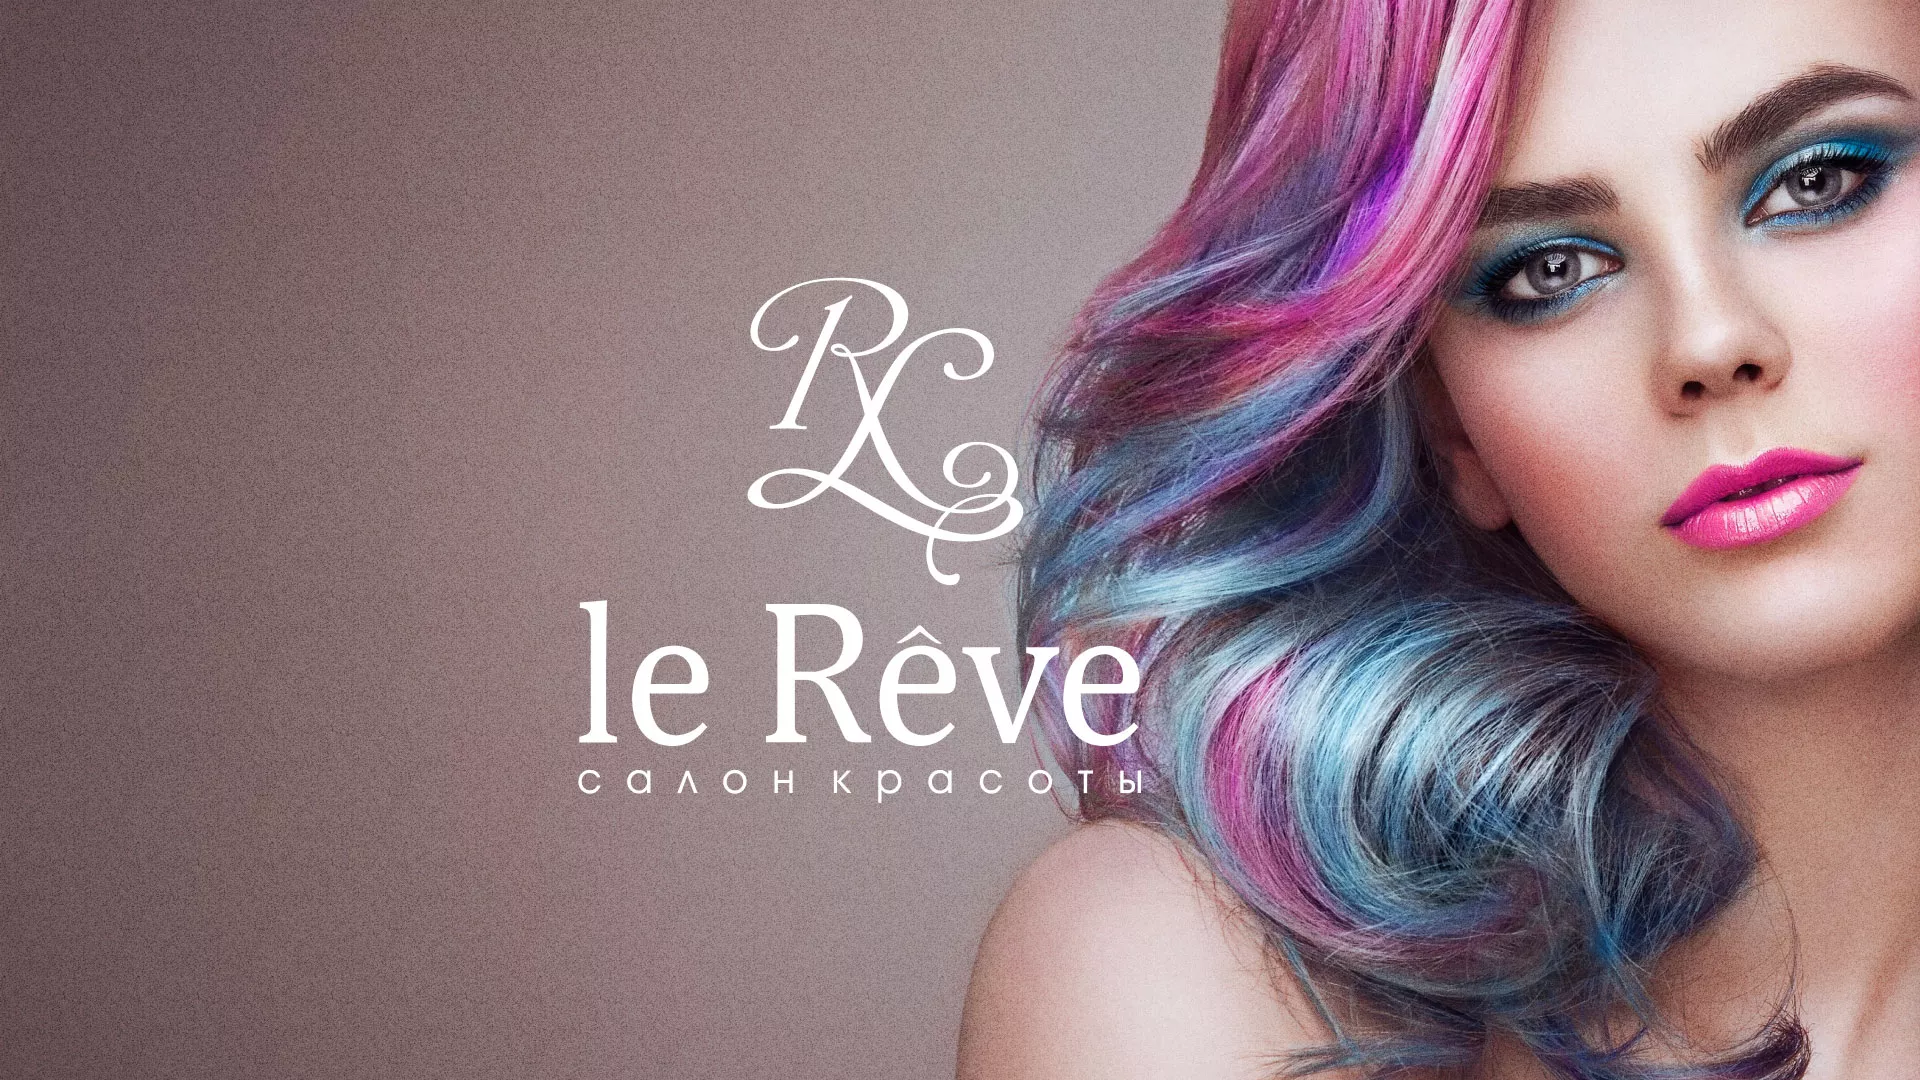 Создание сайта для салона красоты «Le Reve» в Балтийске